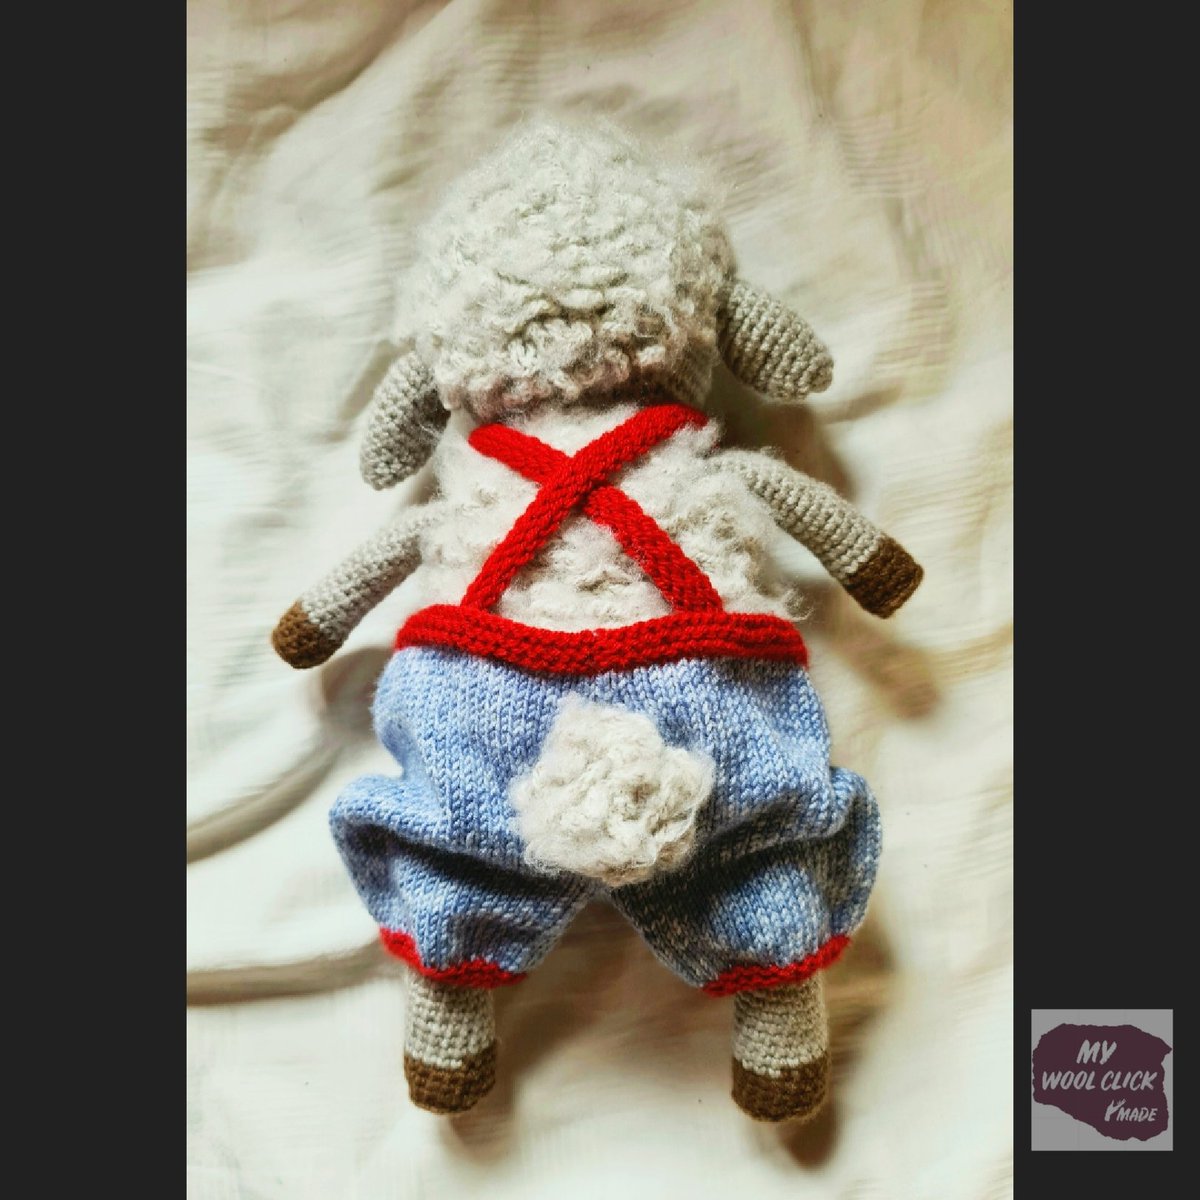 My #sheep is finished 😃
#toys #crochettoys #shaf #handmade #handmadetoys #handarbeit #selbergestrickt #häkeln #knittersgonnaknit #knitteddoll #feitoamao #faitalamain #hechoamano #fattoamano #ovelha #amigurumi #doll #amigurumilove #amigurumitoys #amigurimicreations